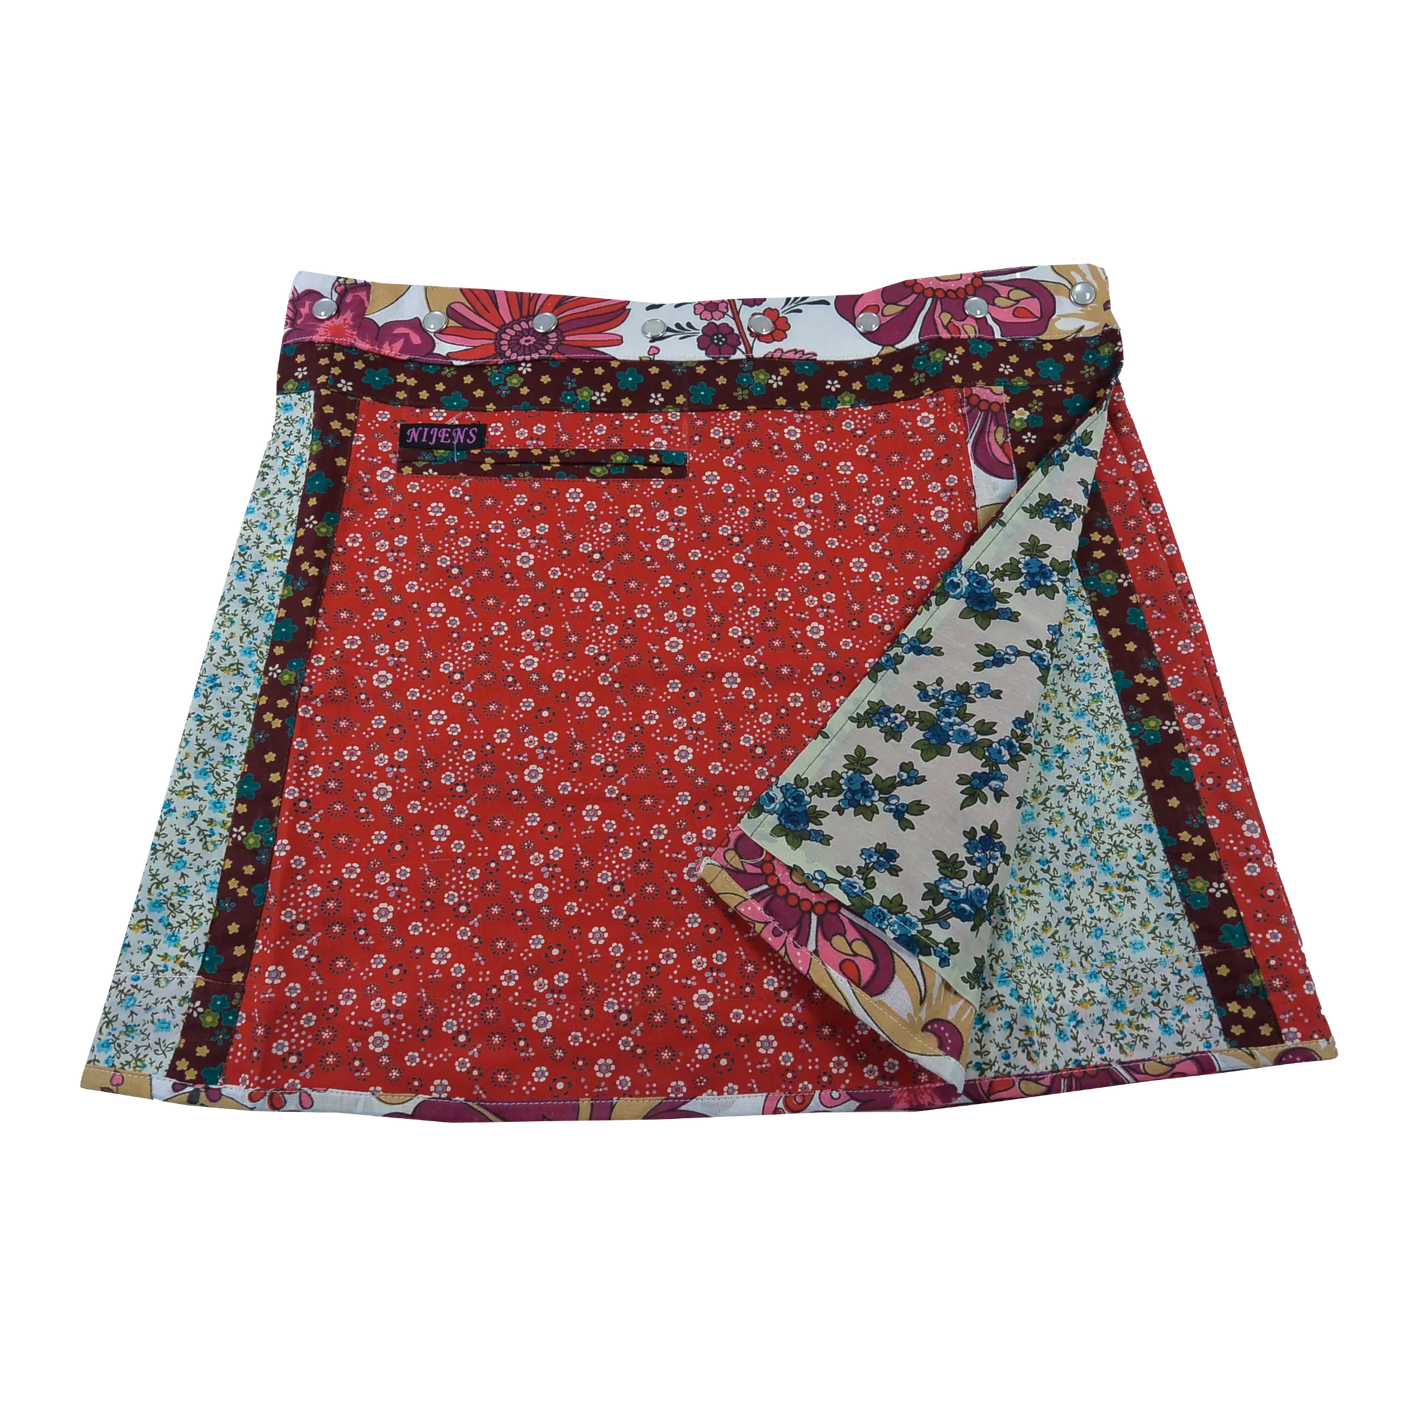 Wenderock aus Baumwolle mit Blumenmuster (rot, weiß) mit kleinem Einsteckfach vorne. Umfang ist einstellbar mit gläsernen Druckknöpfen am Rockbund. Muster und Farbenmix.